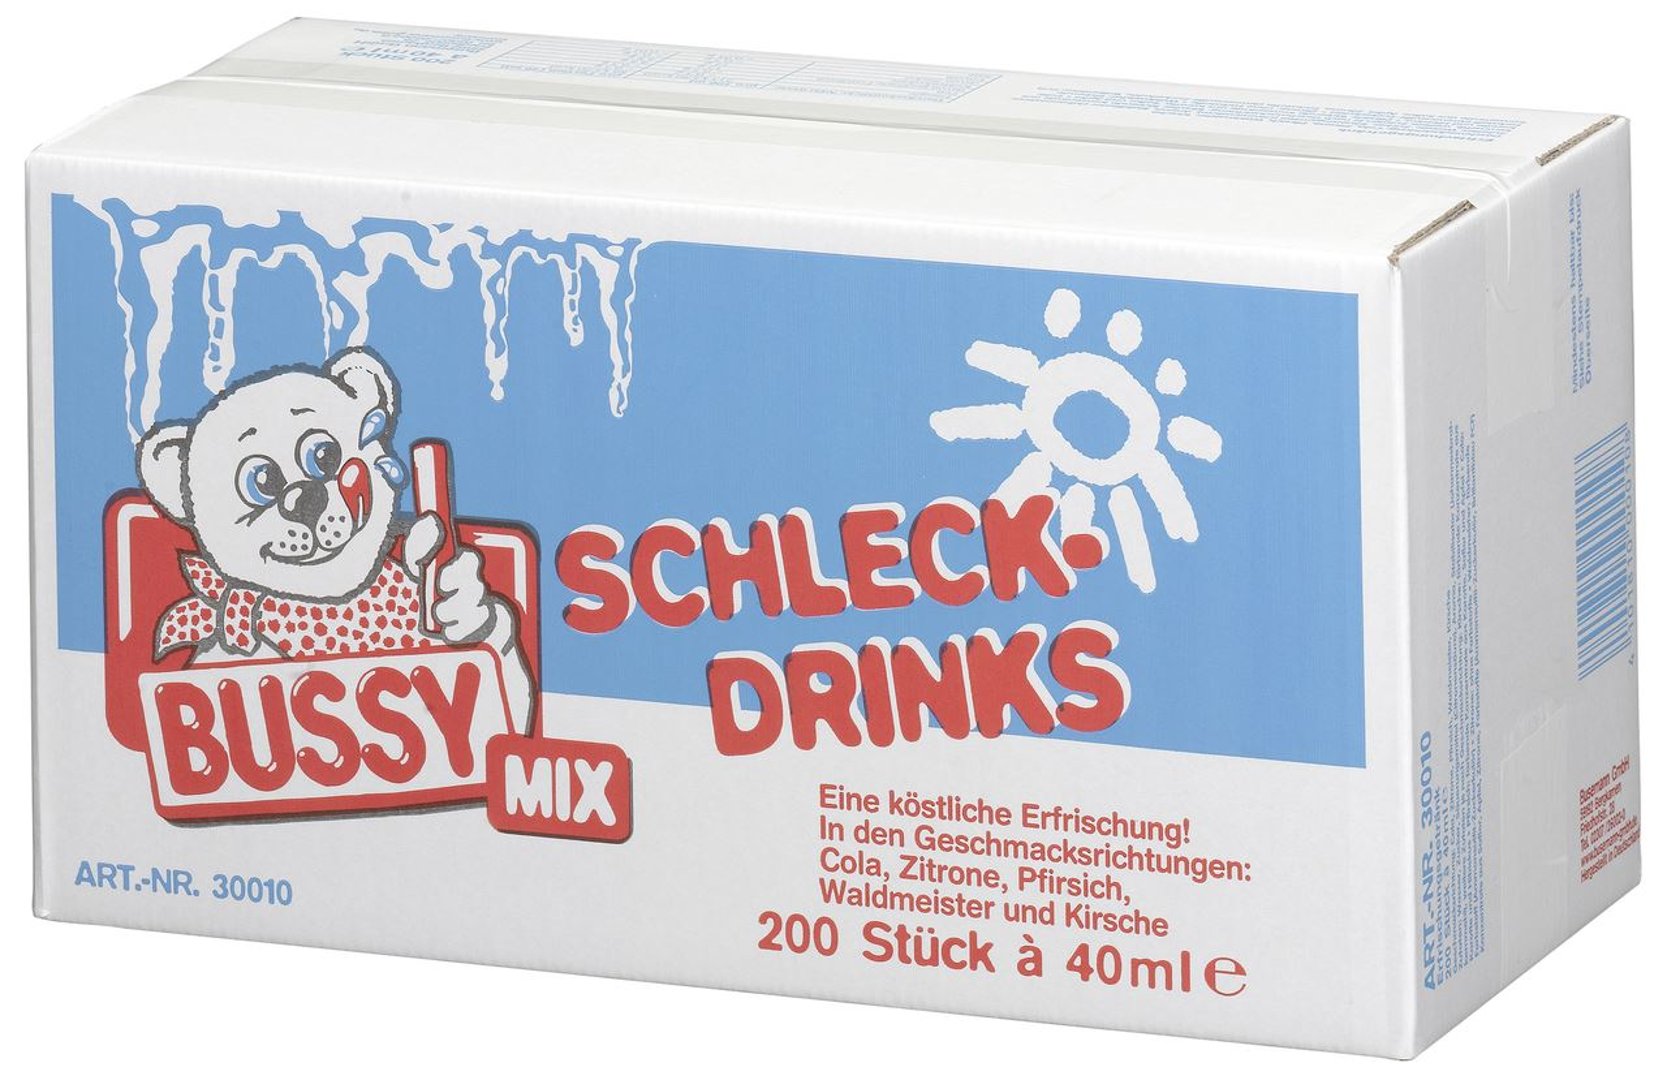 Bussy - Wassereis 200 Stück à 40 ml, Mix aus Cola, Zitrone, Erdbeere, Waldmeister, Kirsche 200 x 8 l